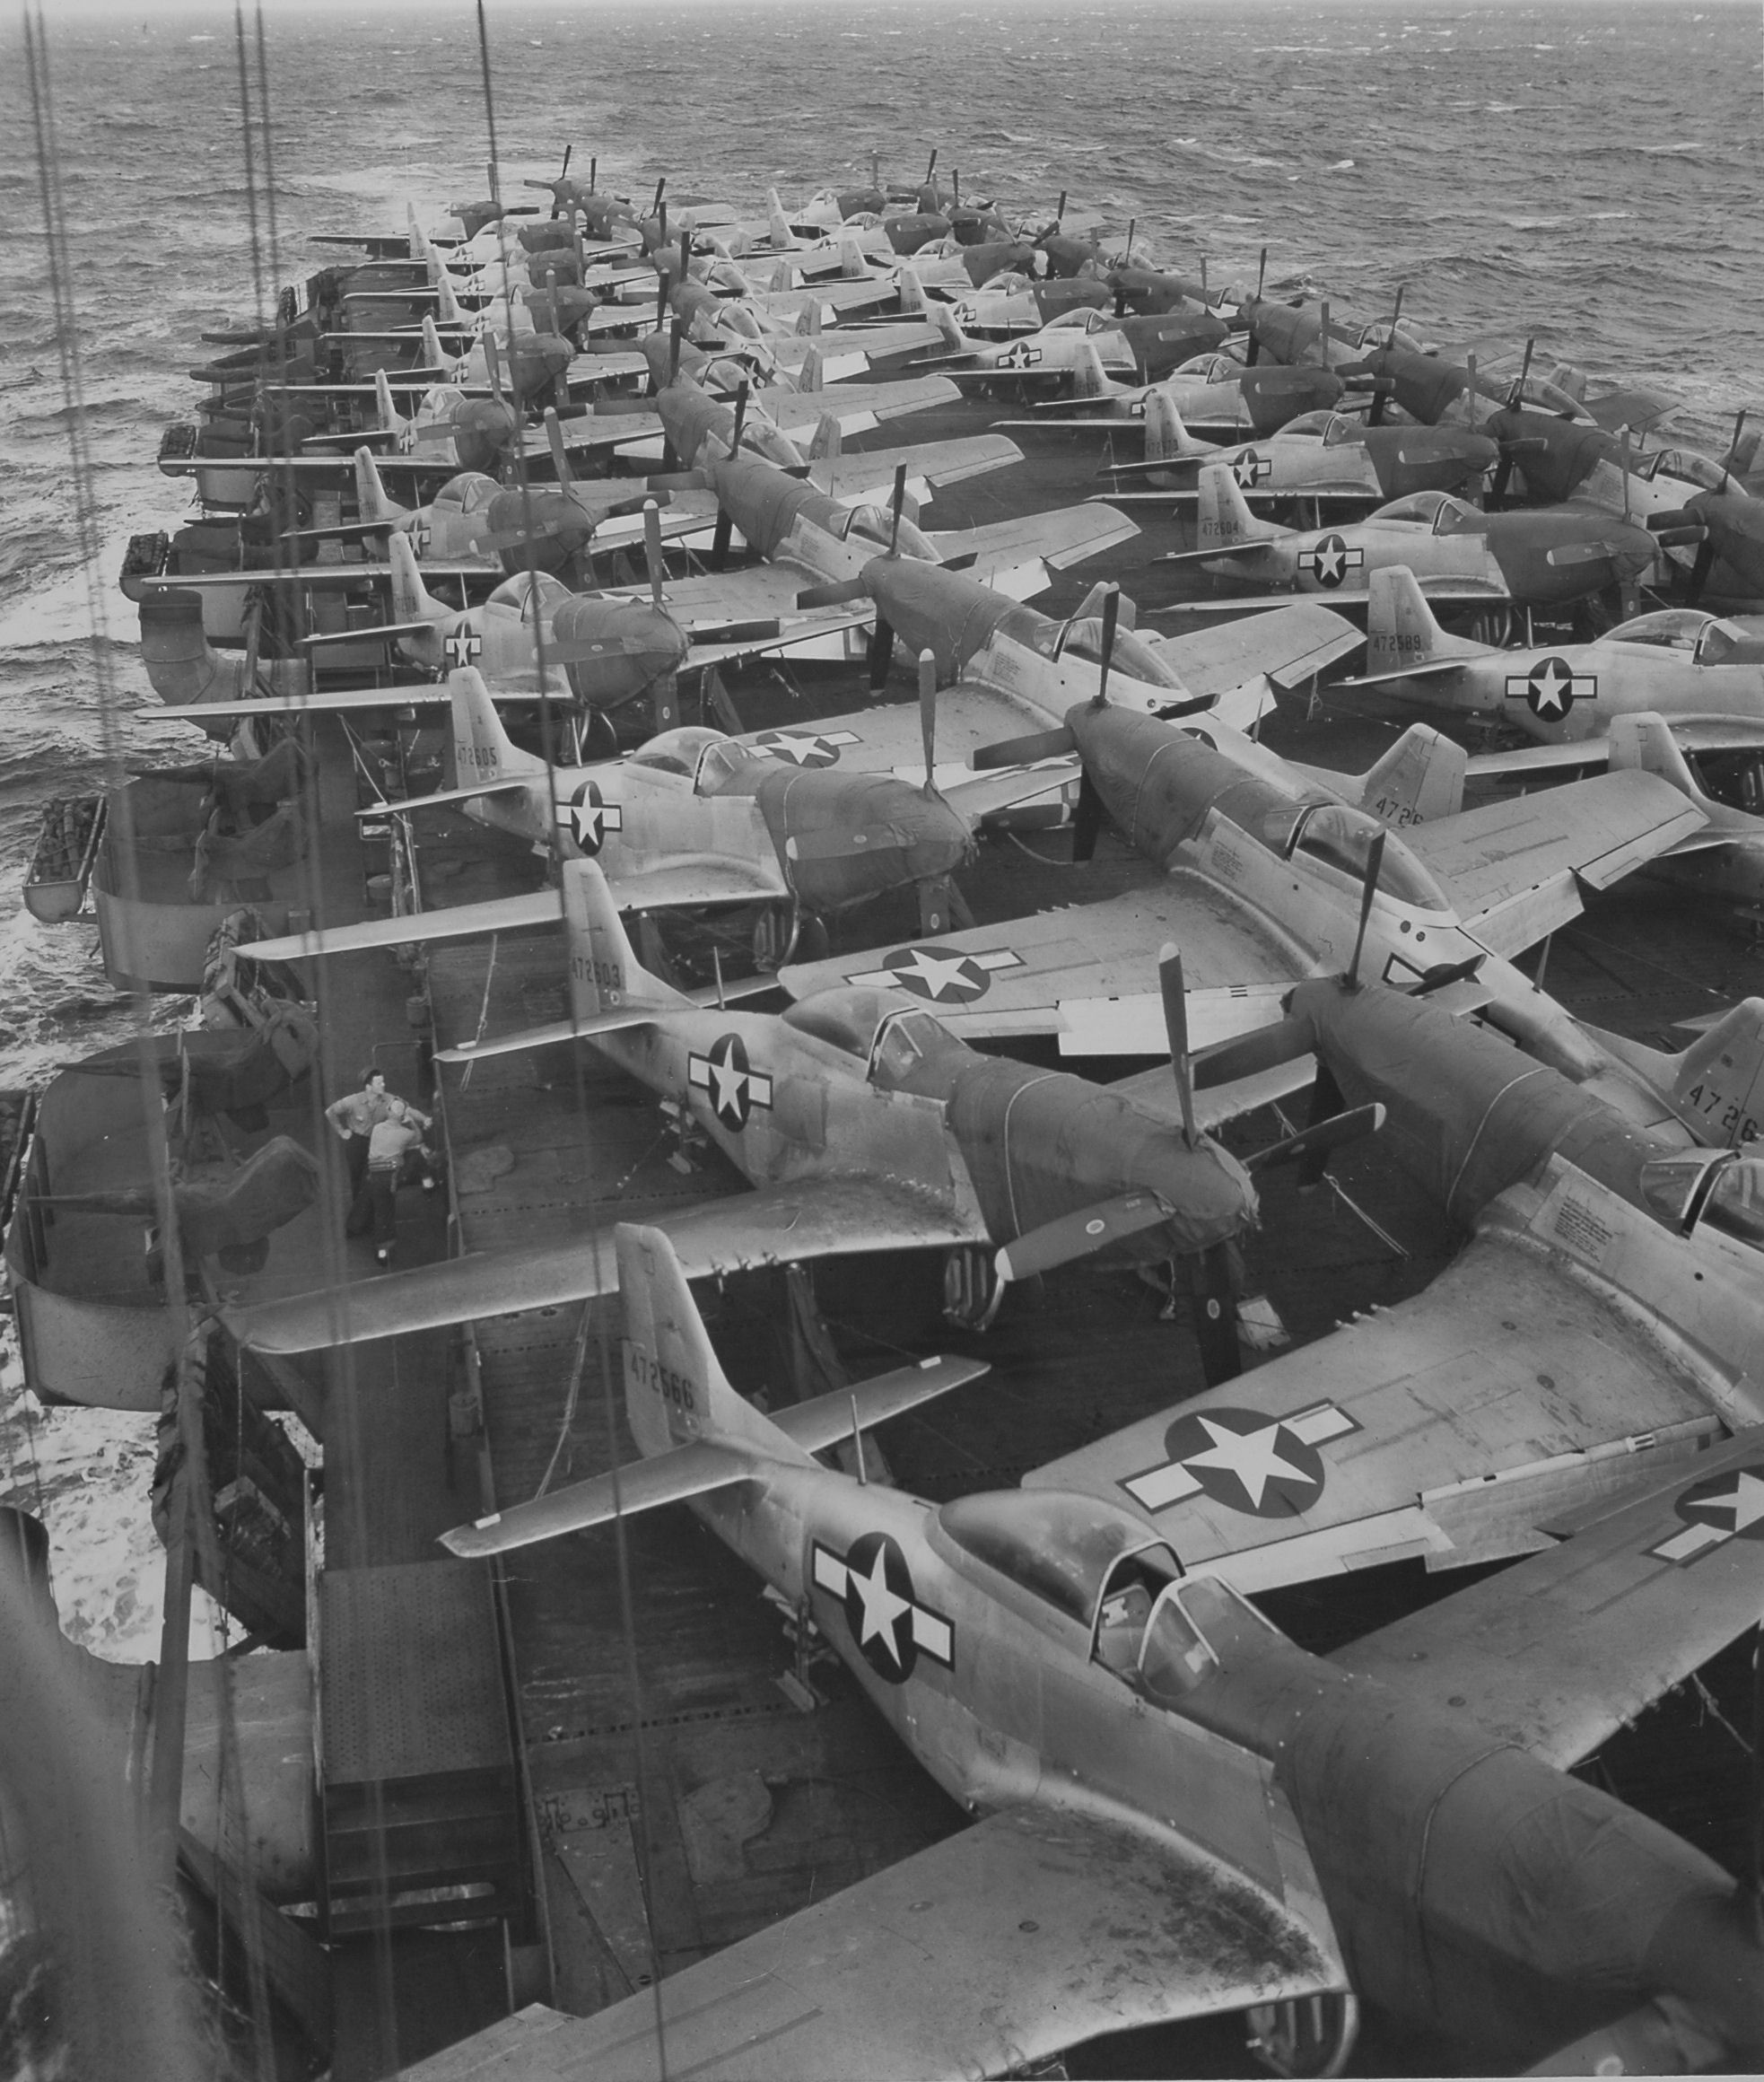 Kalinin Bay Escort Carrier - ferrying 506th P-51D Mustang's destend for Iwo Jima